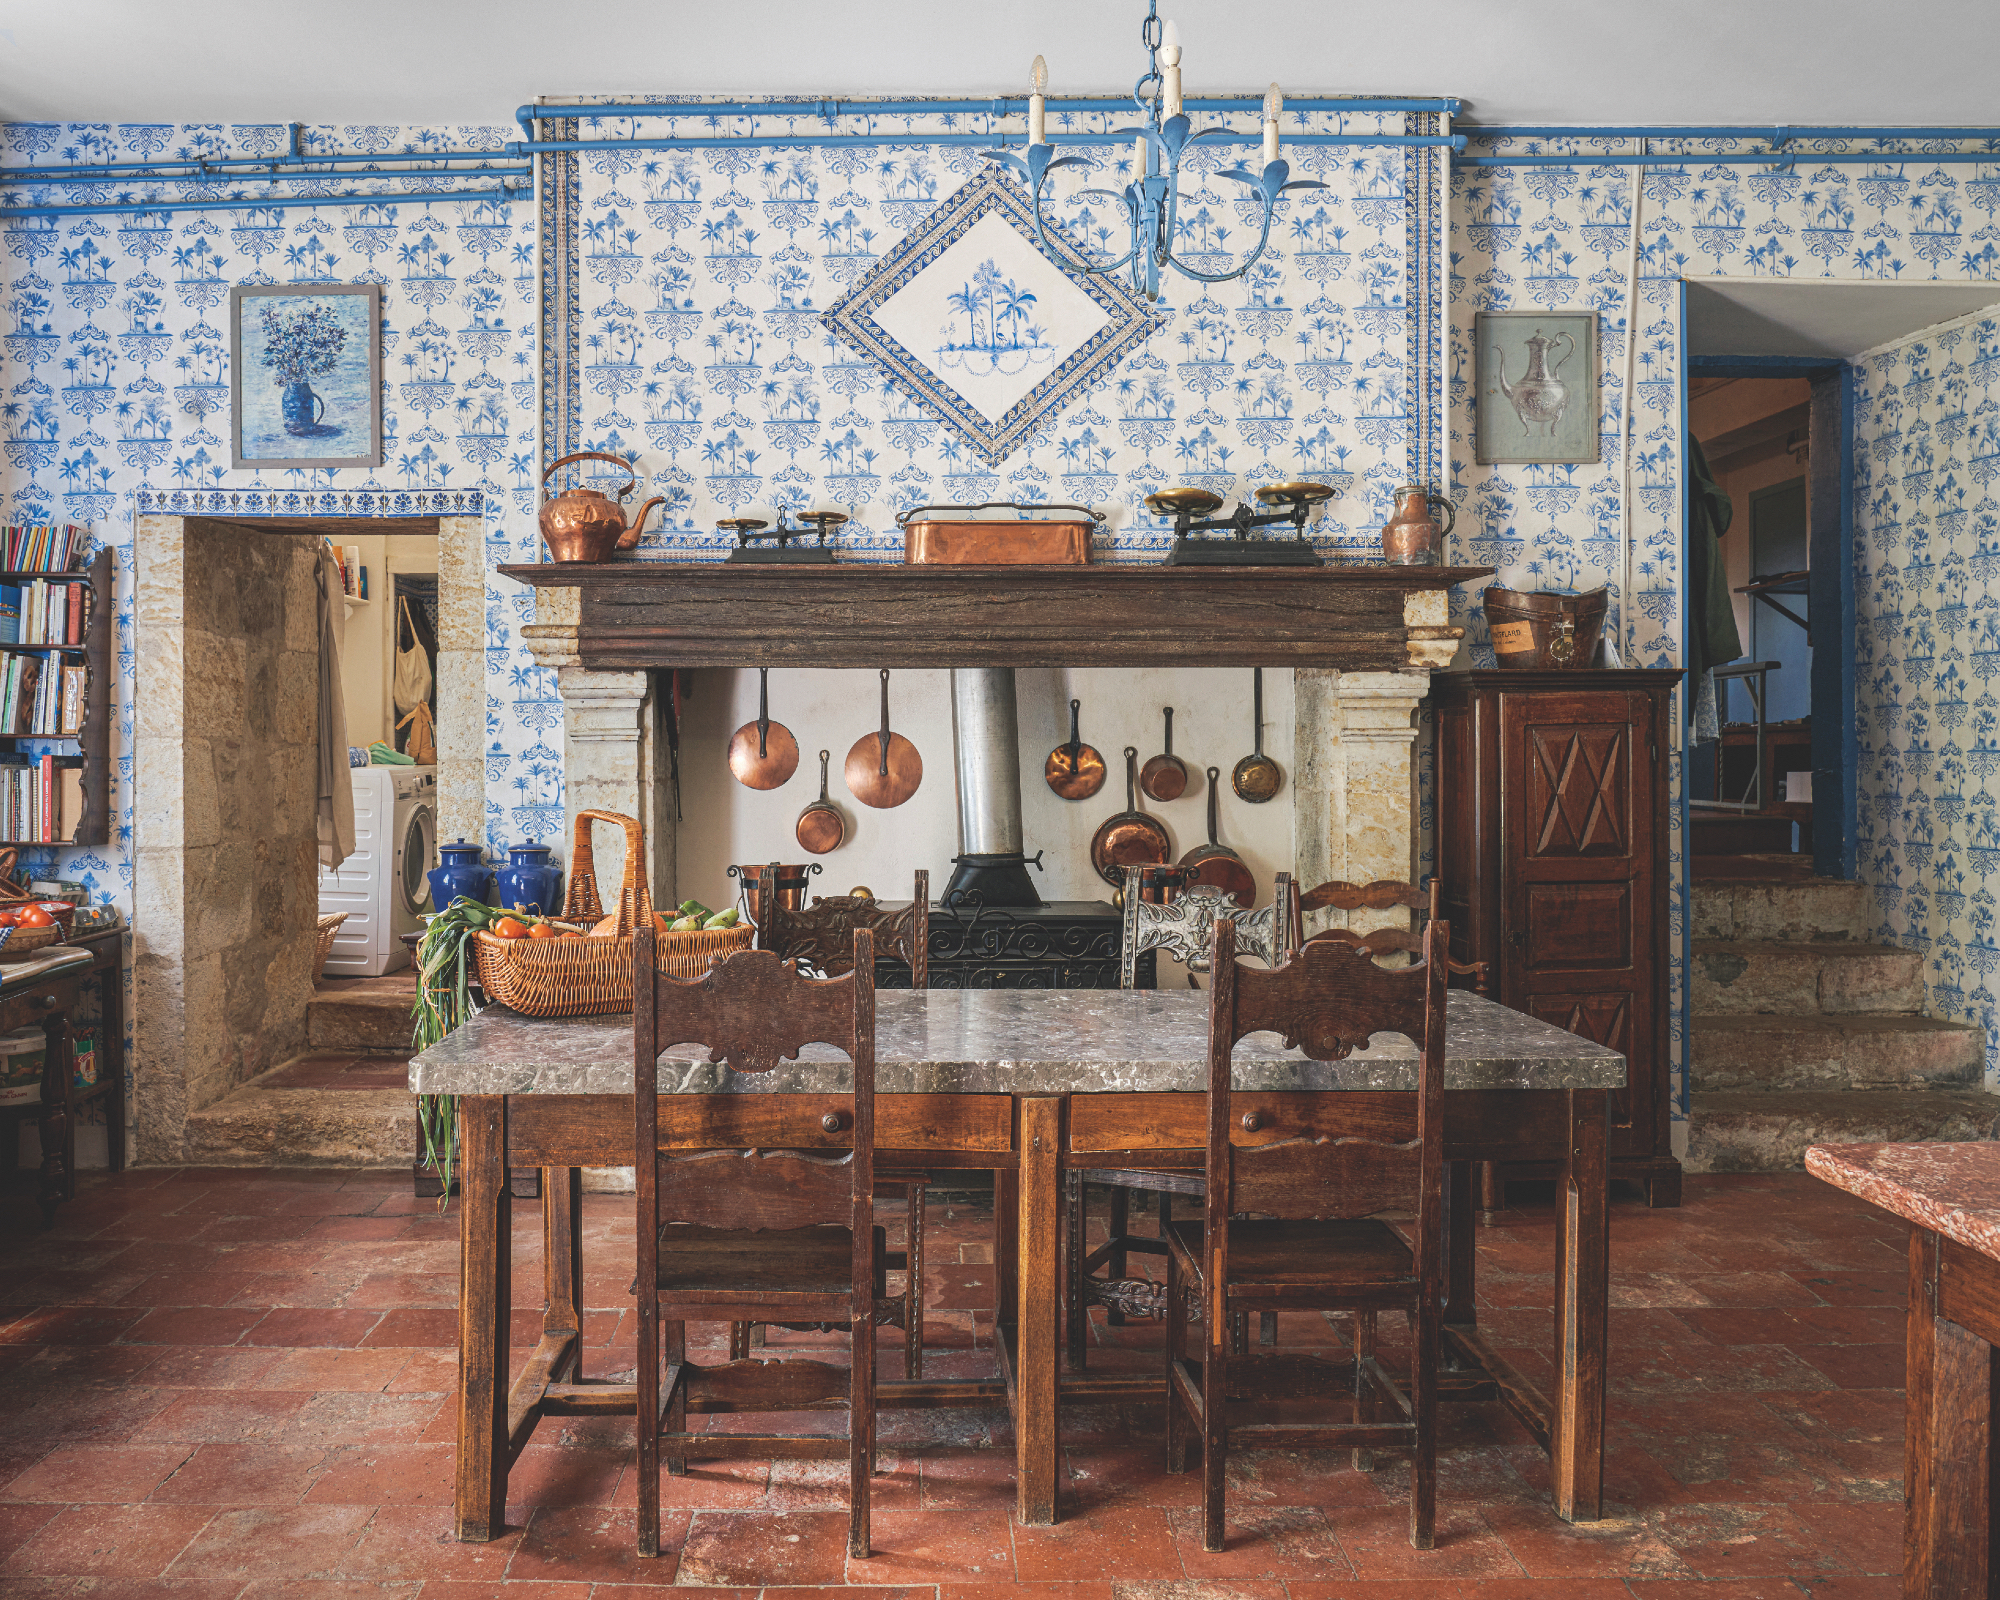 Cuisine française avec mur carrelé authentique bleu et blanc, cheminée, meubles vintage, carreaux en terre cuite, casseroles en cuivre, panier sur table en marbre, marches à droite